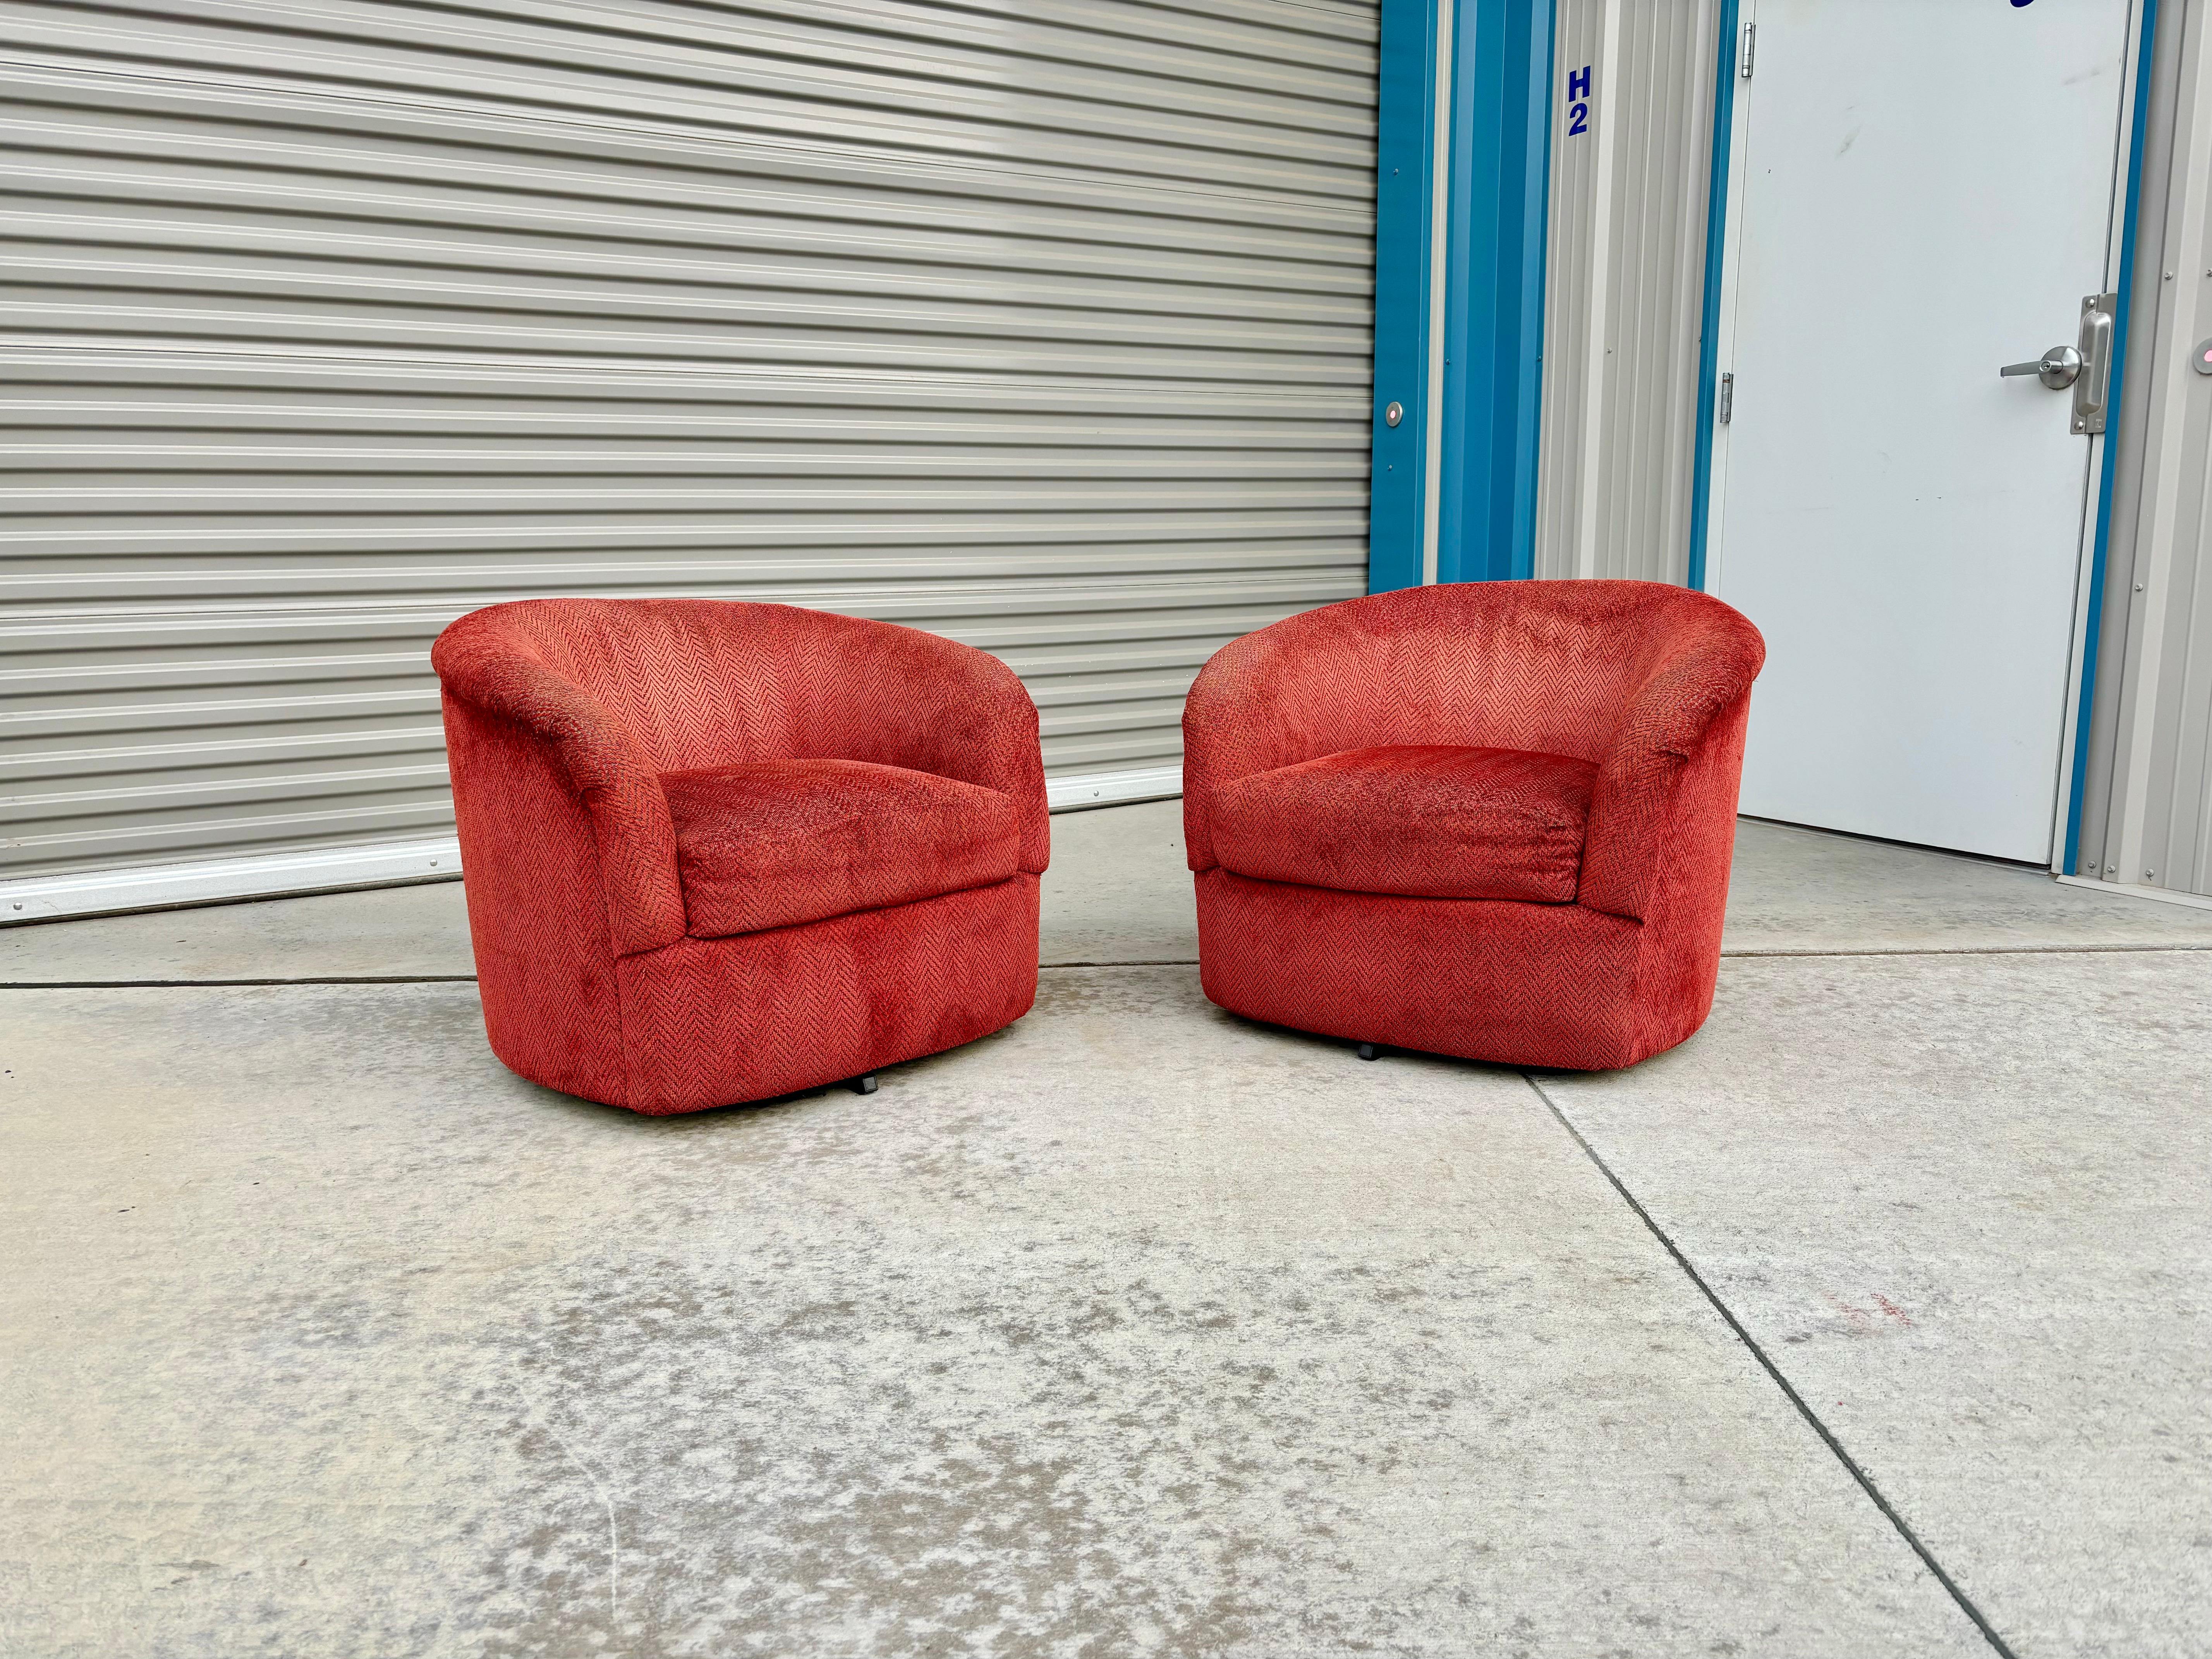 Chaises pivotantes en forme de tonneau du milieu du siècle dernier, conçues et fabriquées aux États-Unis vers les années 1960. Ces magnifiques chaises de salon sont dotées d'une base pivotante en tissu rouge qui tourne à 360 degrés. Ces chaises